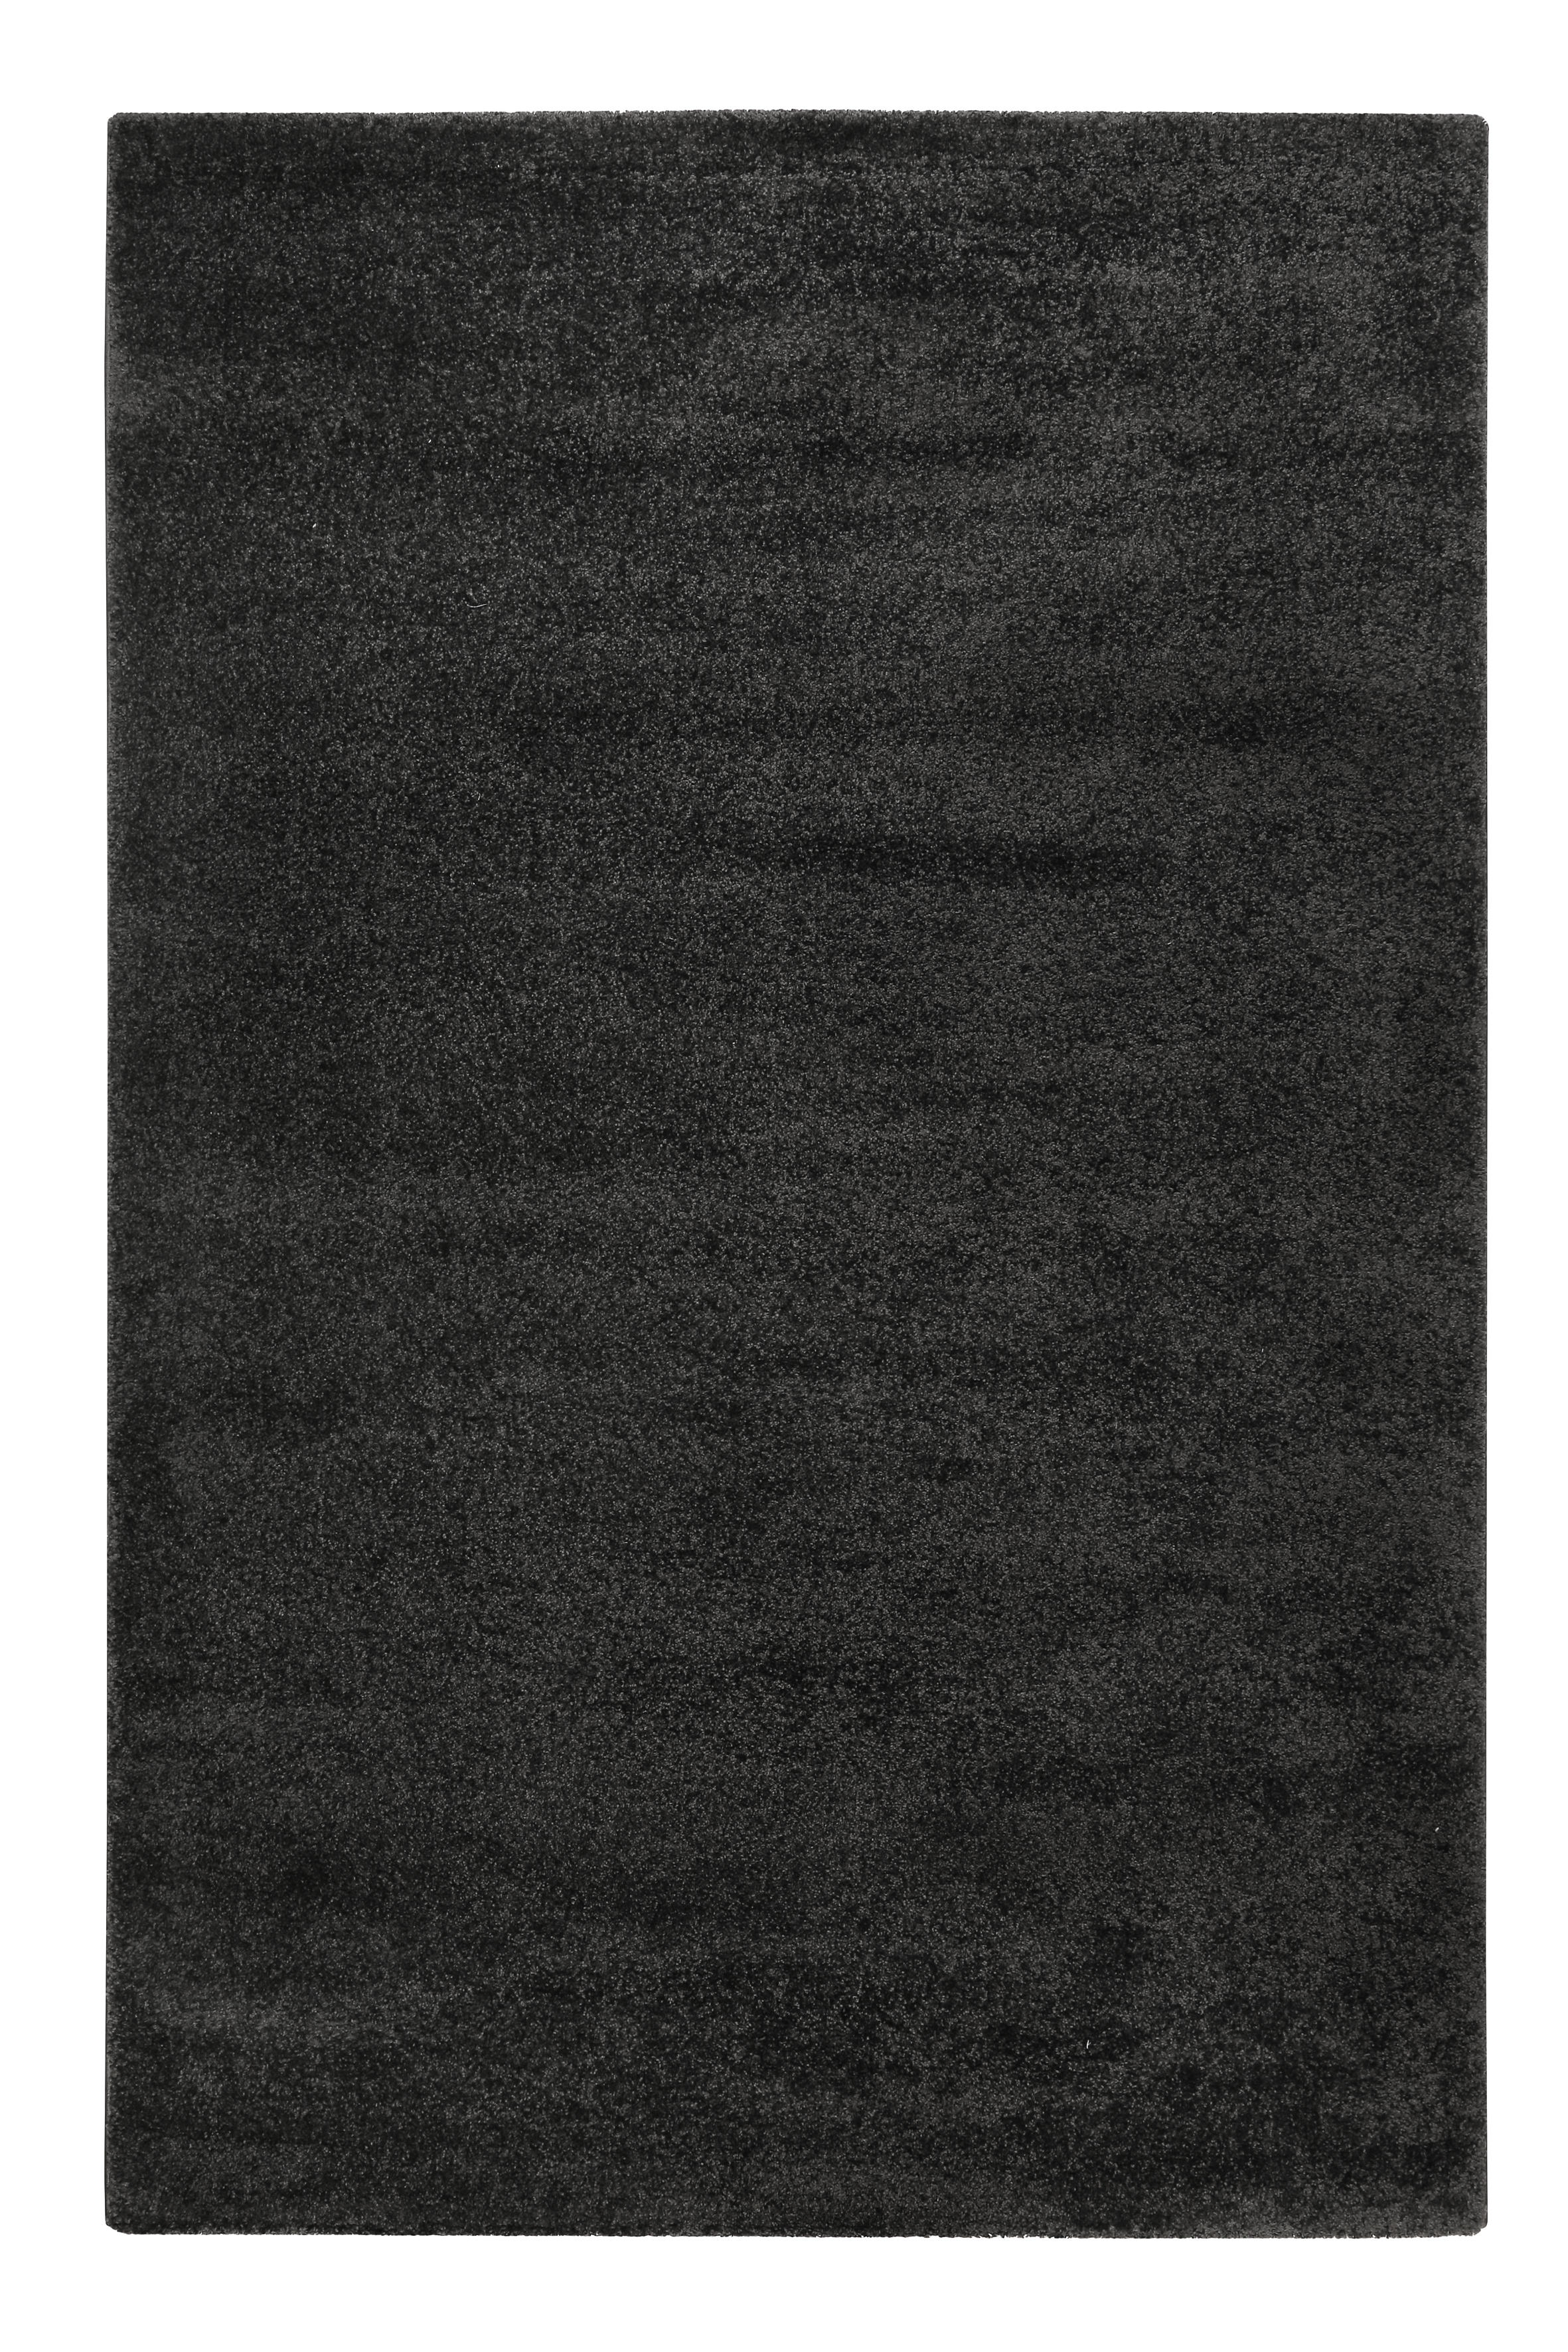 WEBTEPPICH  133/200 cm  Anthrazit   - Anthrazit, KONVENTIONELL, Textil (133/200cm) - Esprit